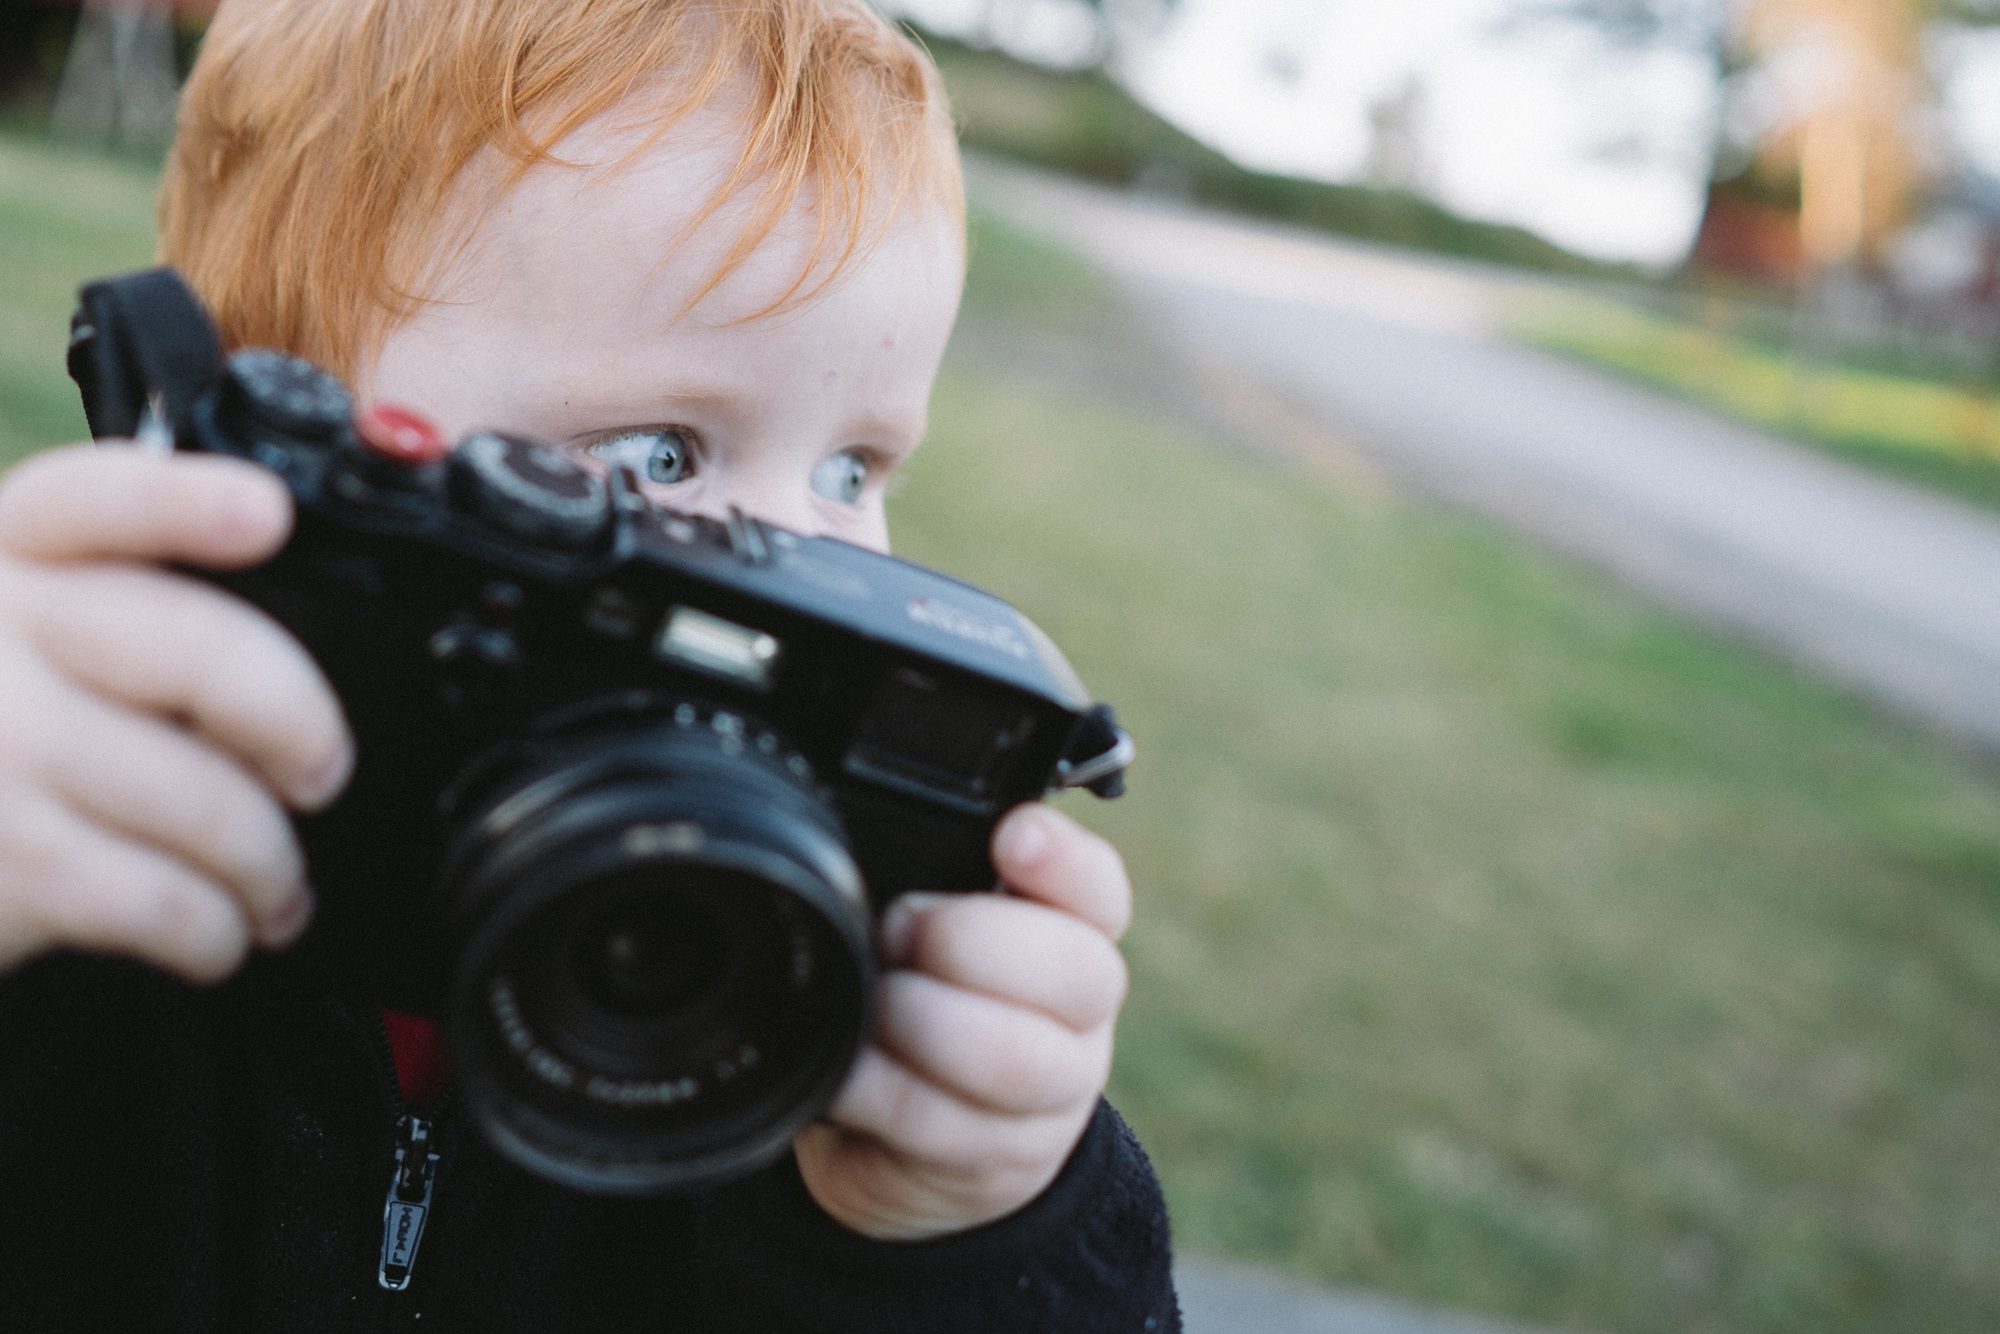 Gutt med kamera ser etter motiver å fotografere.